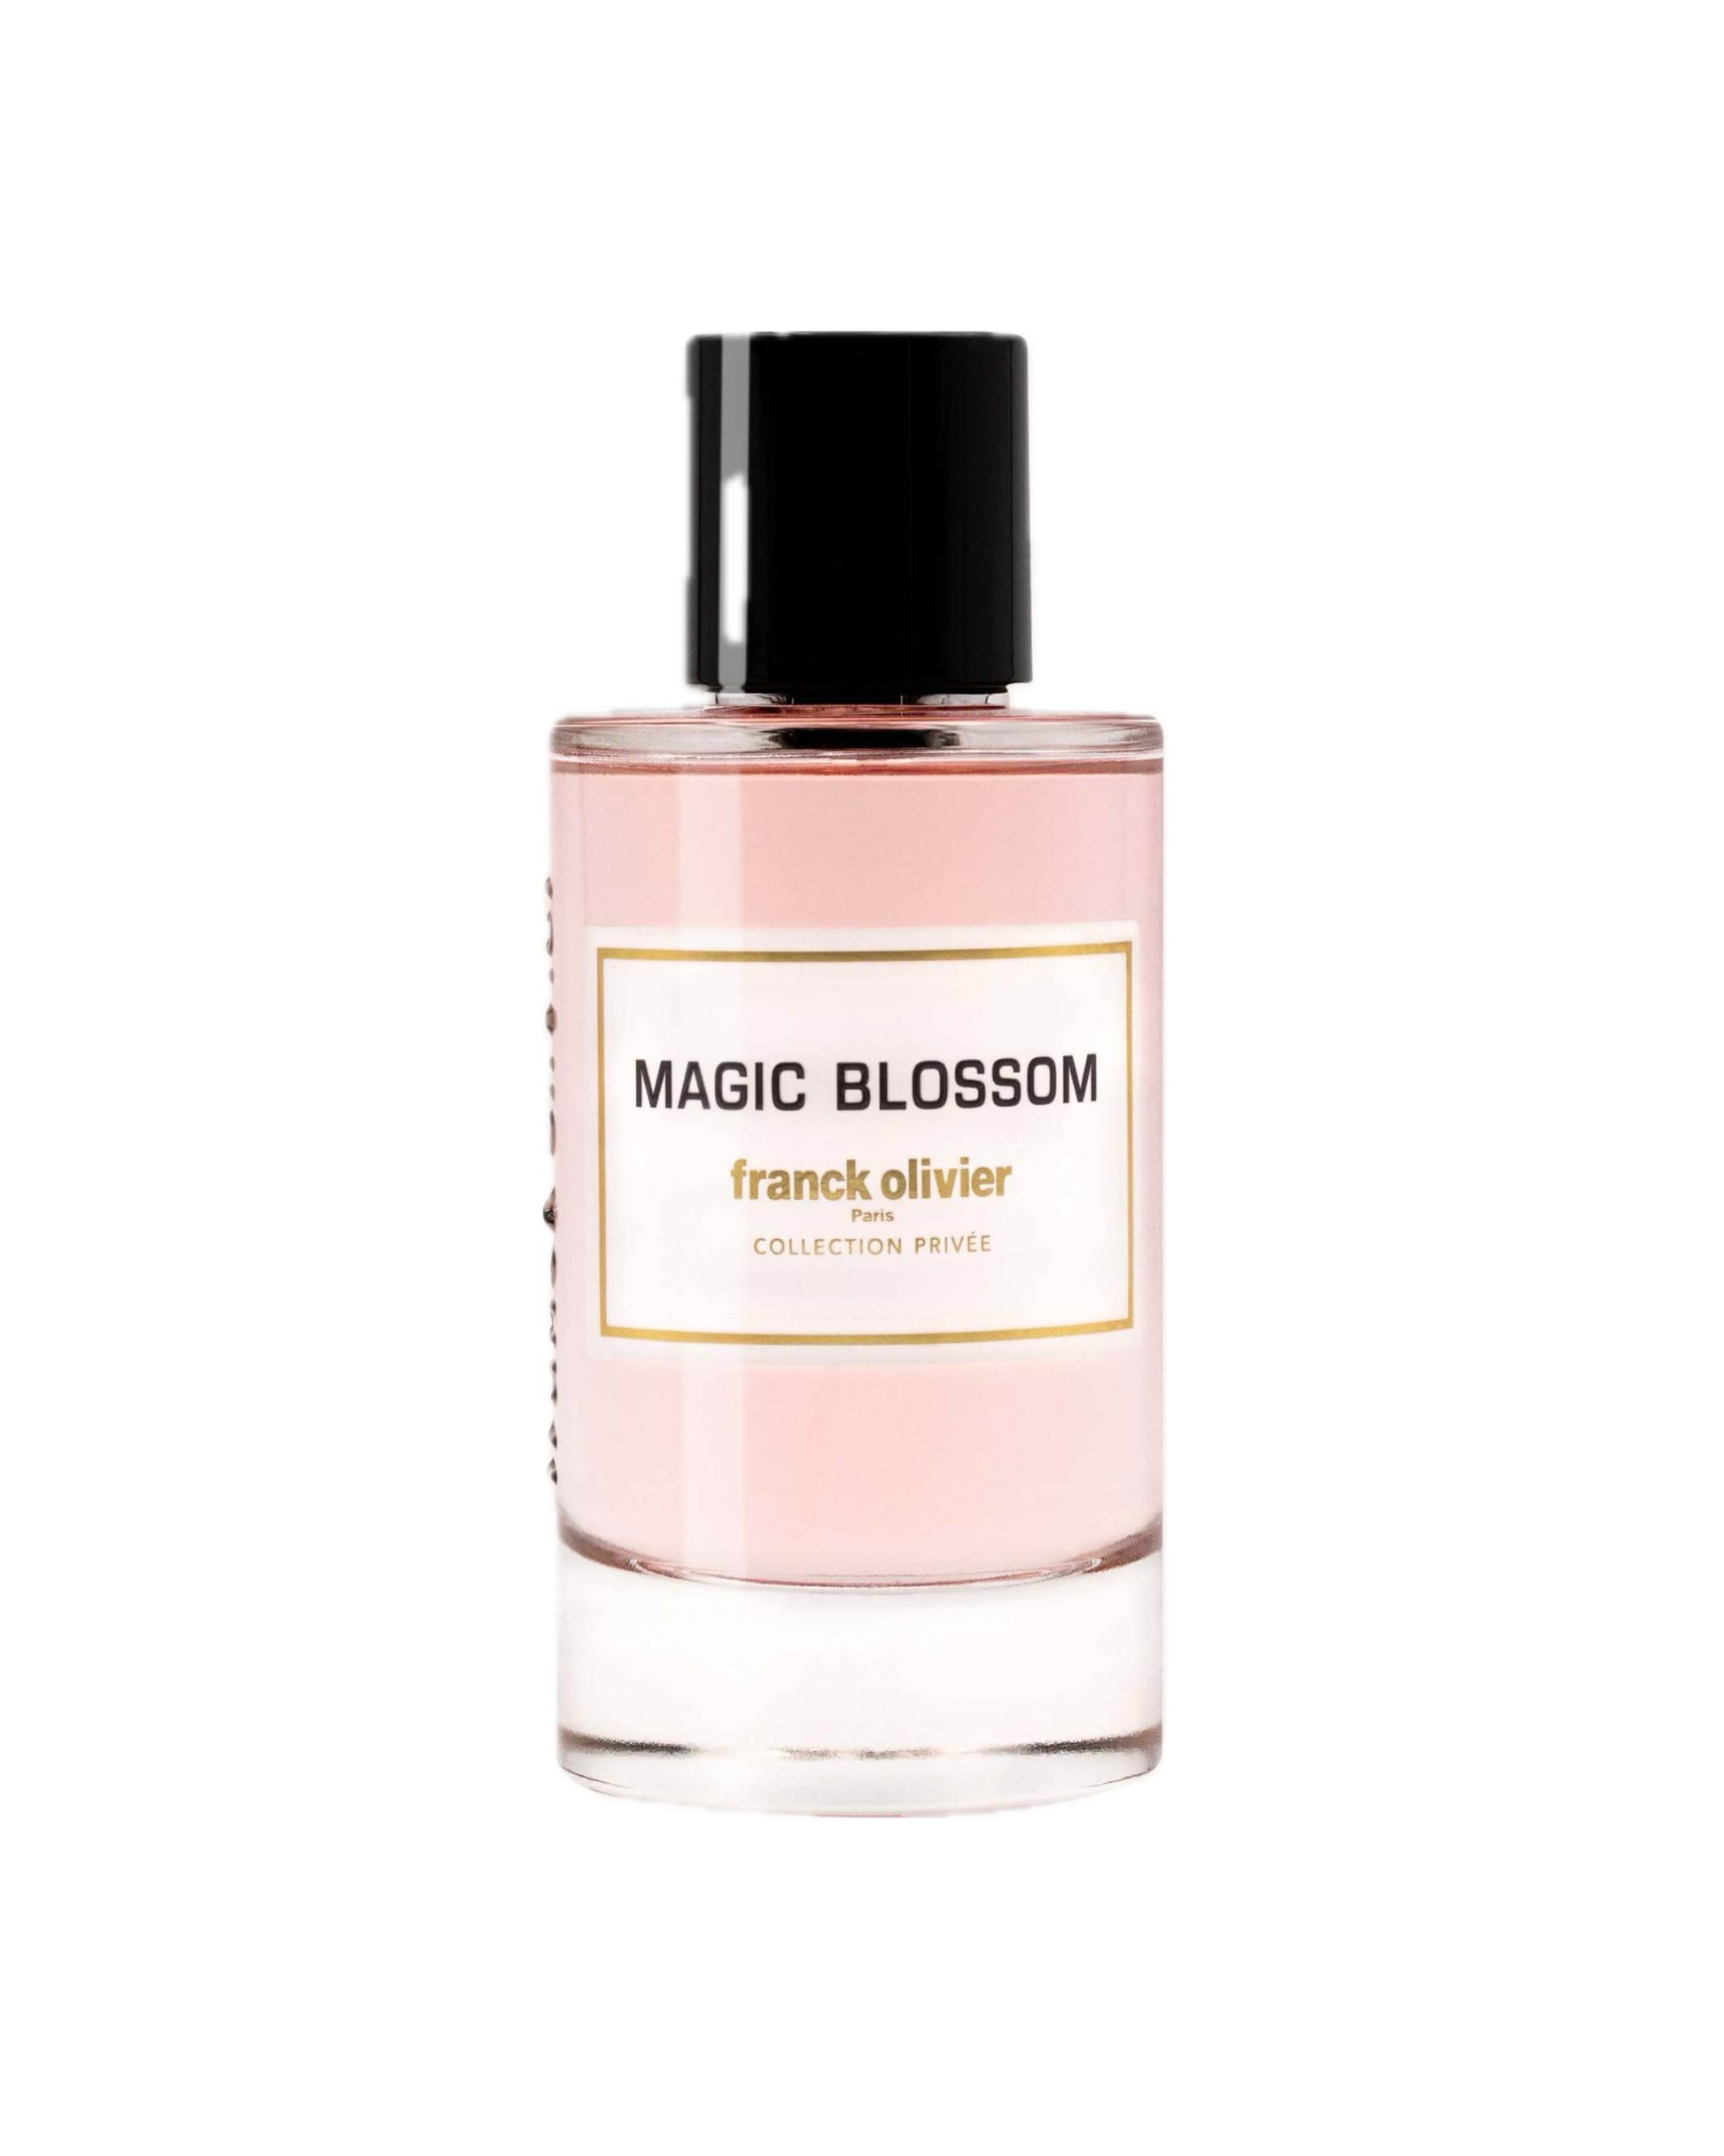 Franck Olivier – MAGIC BLOSSOM–foryou–prix de foryou parfumurie en ligne–vente de parfum original au Maroc–prix de foryou parfum